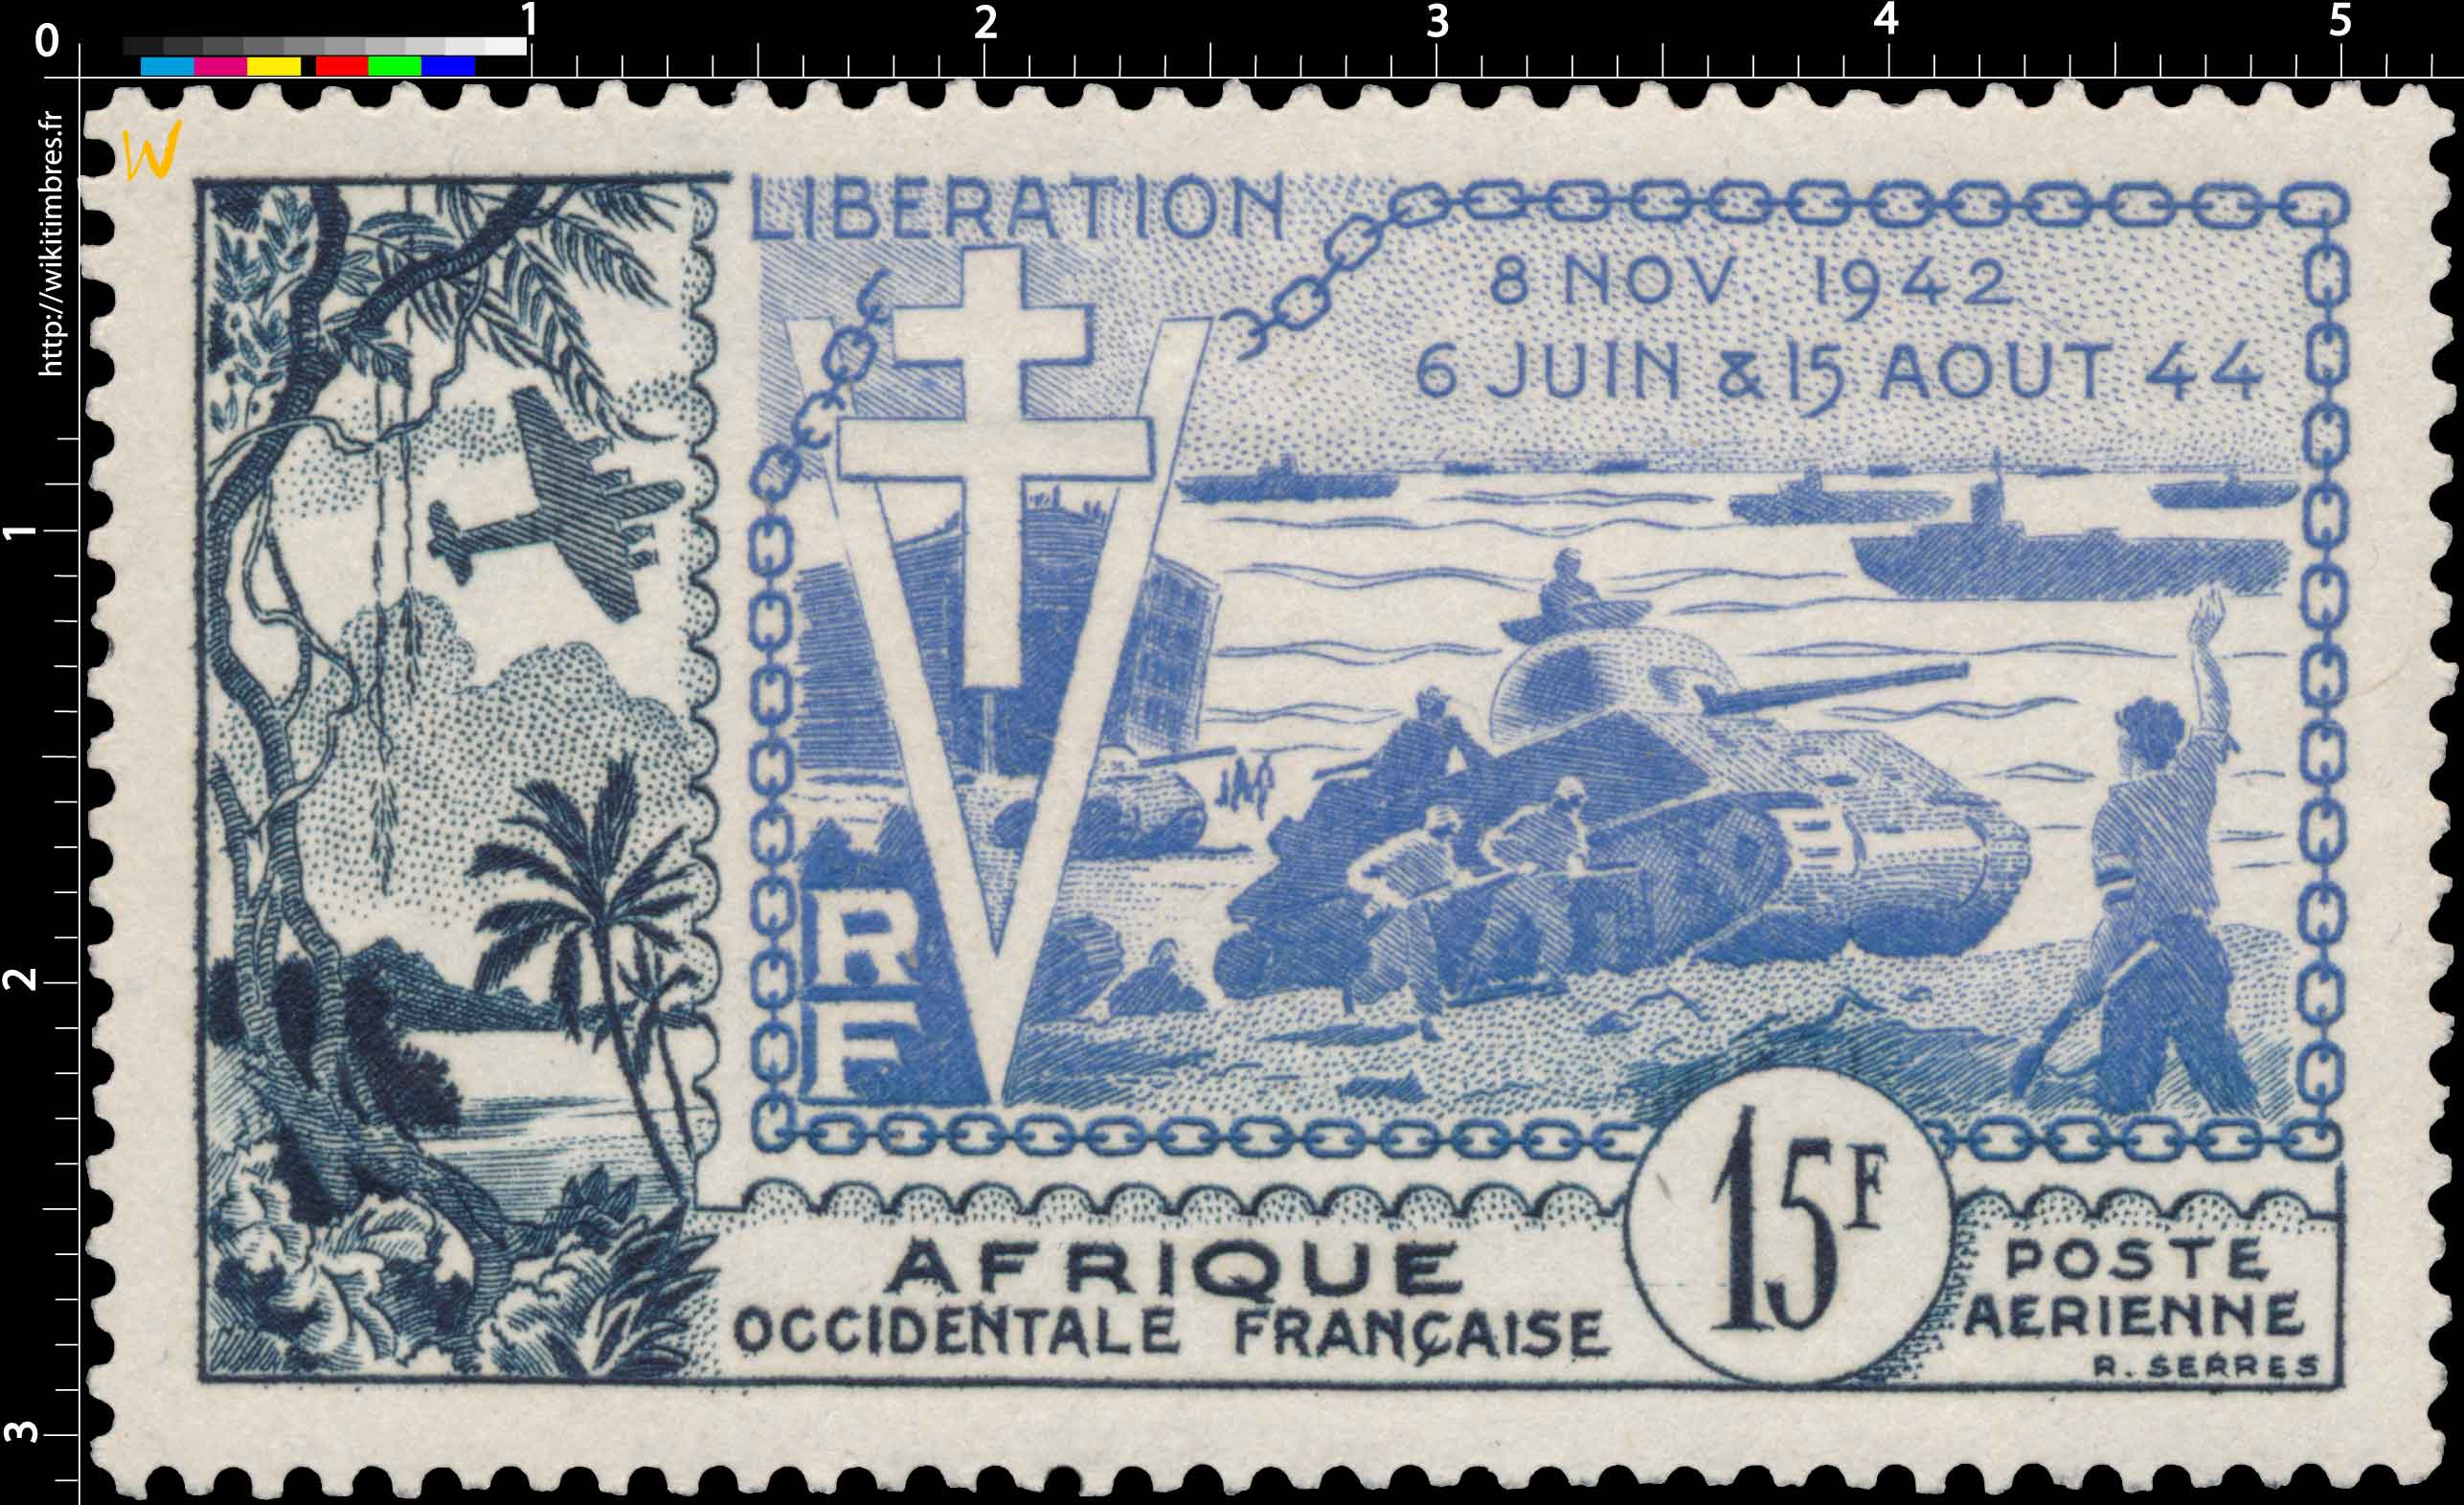 Afrique Occidentale Française -  Libération 8 nov 1942 6 juin & 15 août 44